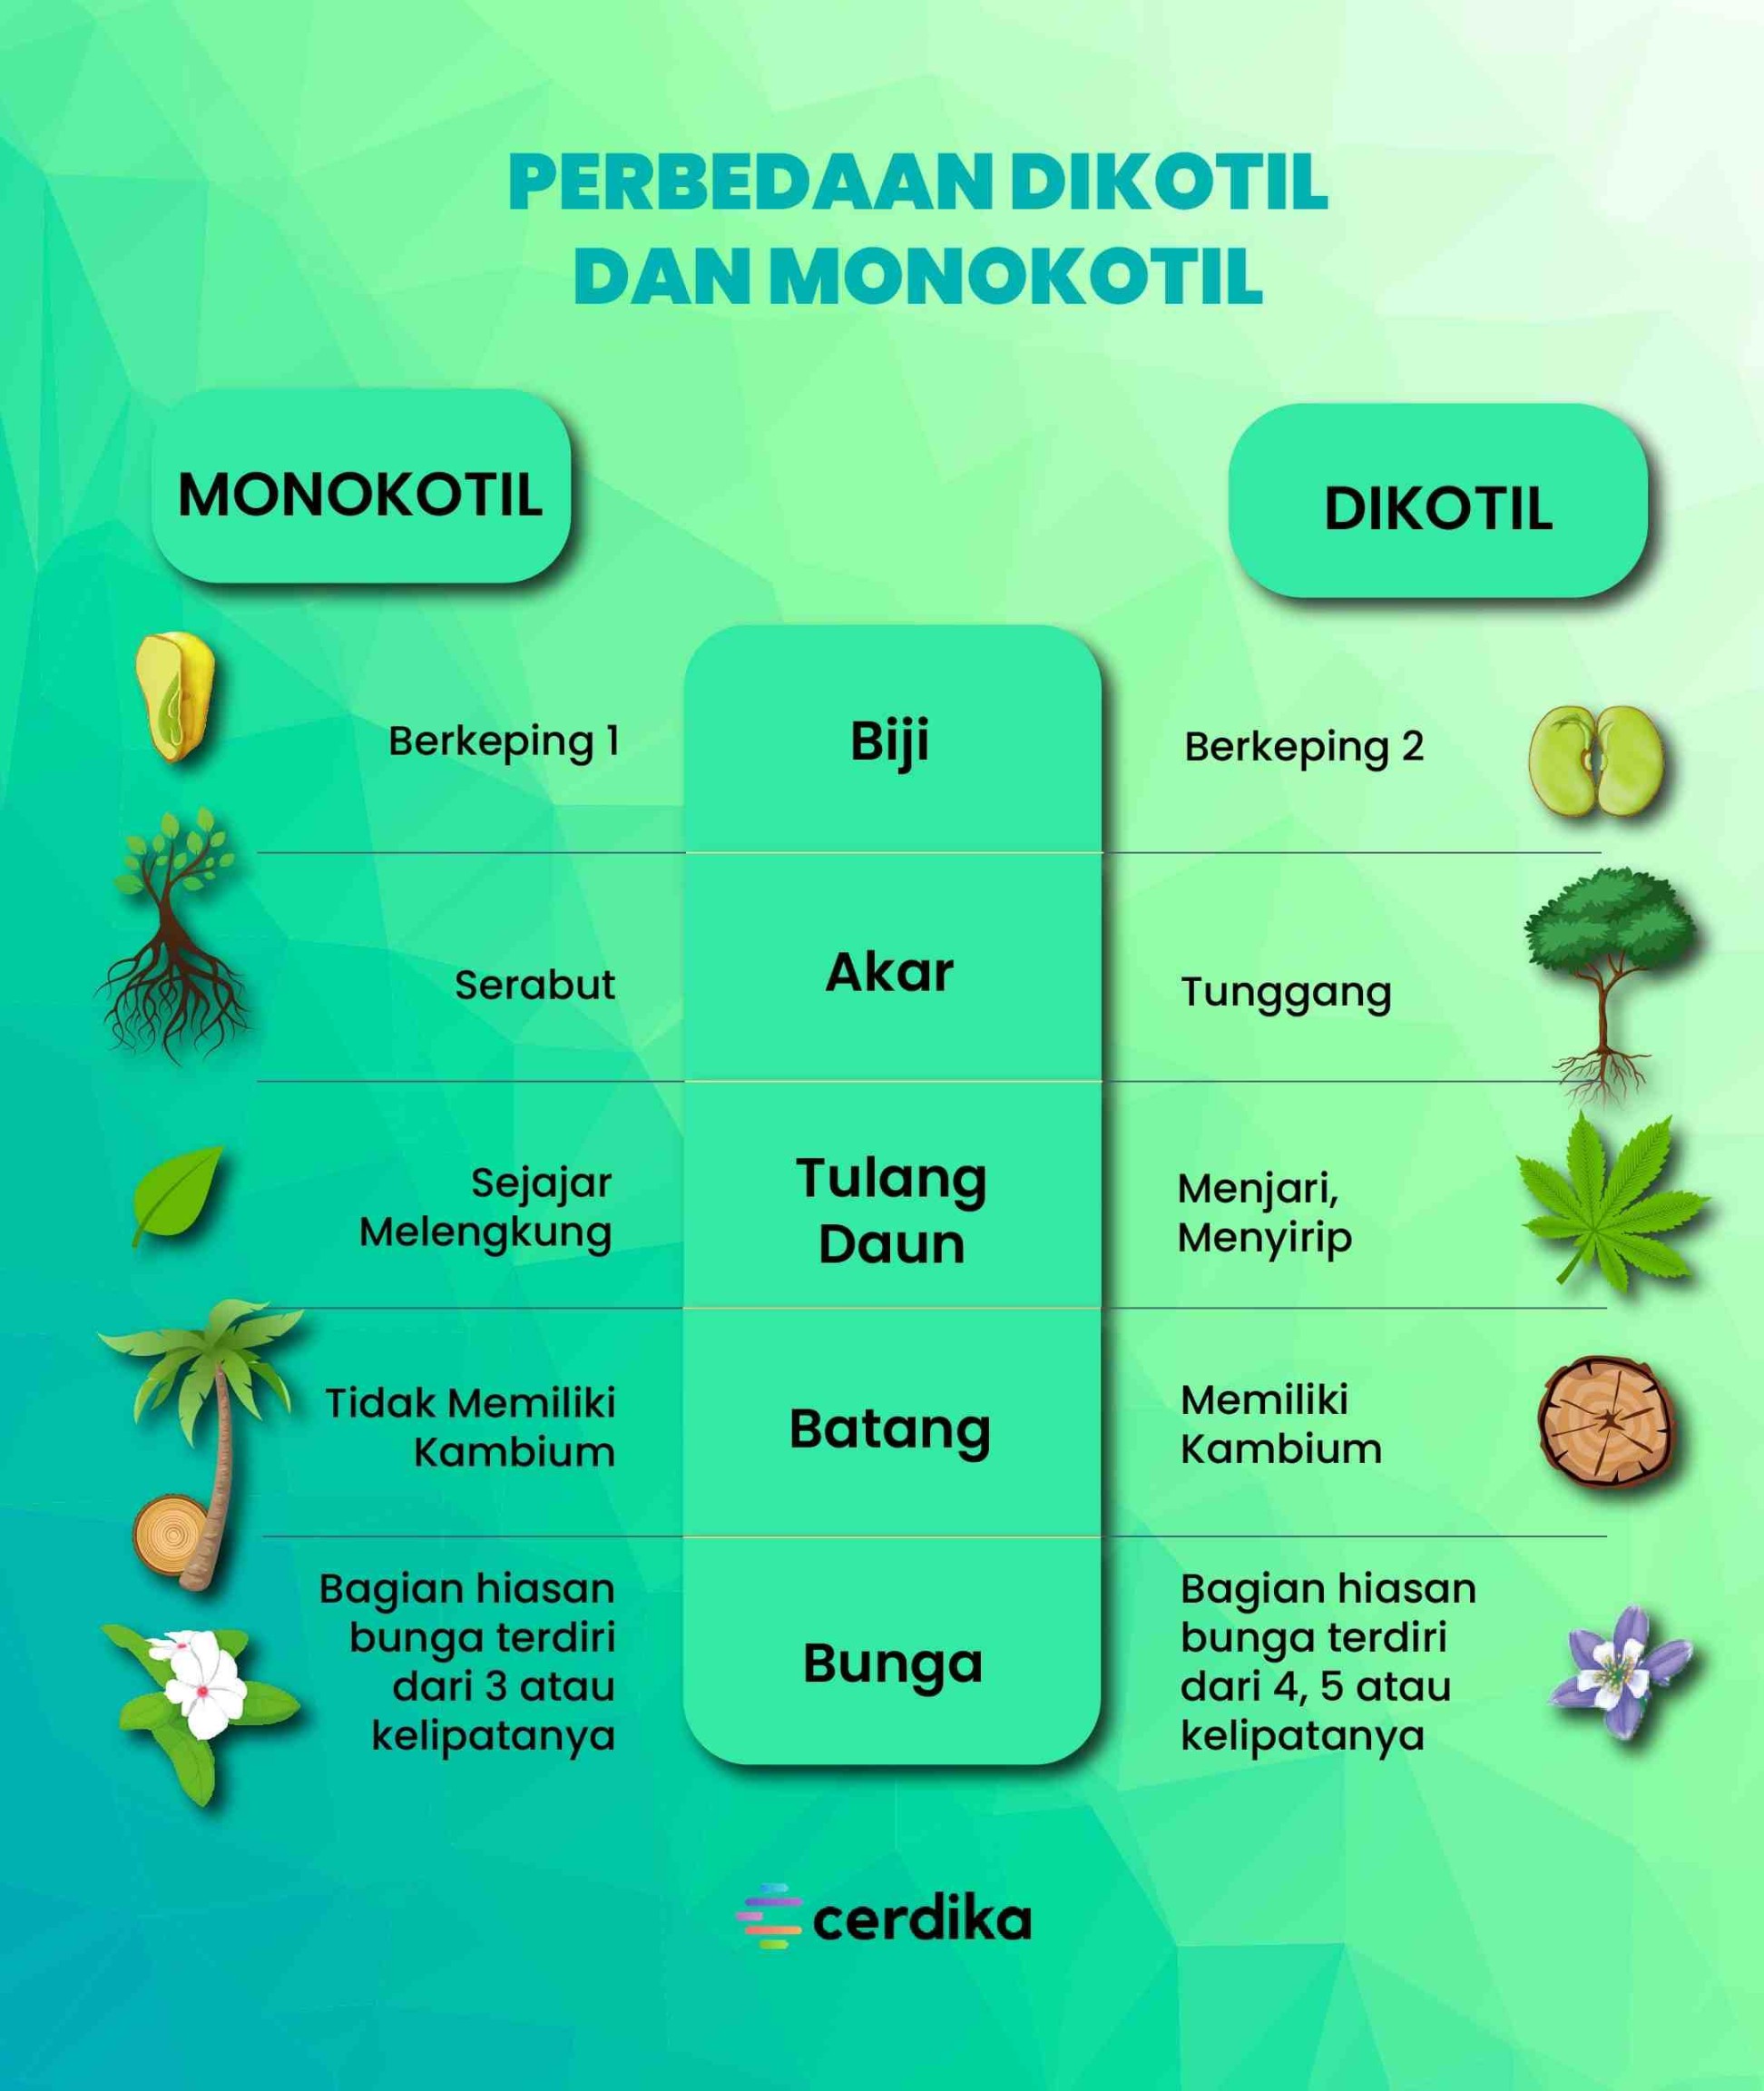 + Perbedaan Tumbuhan Dikotil dan Monokotil!